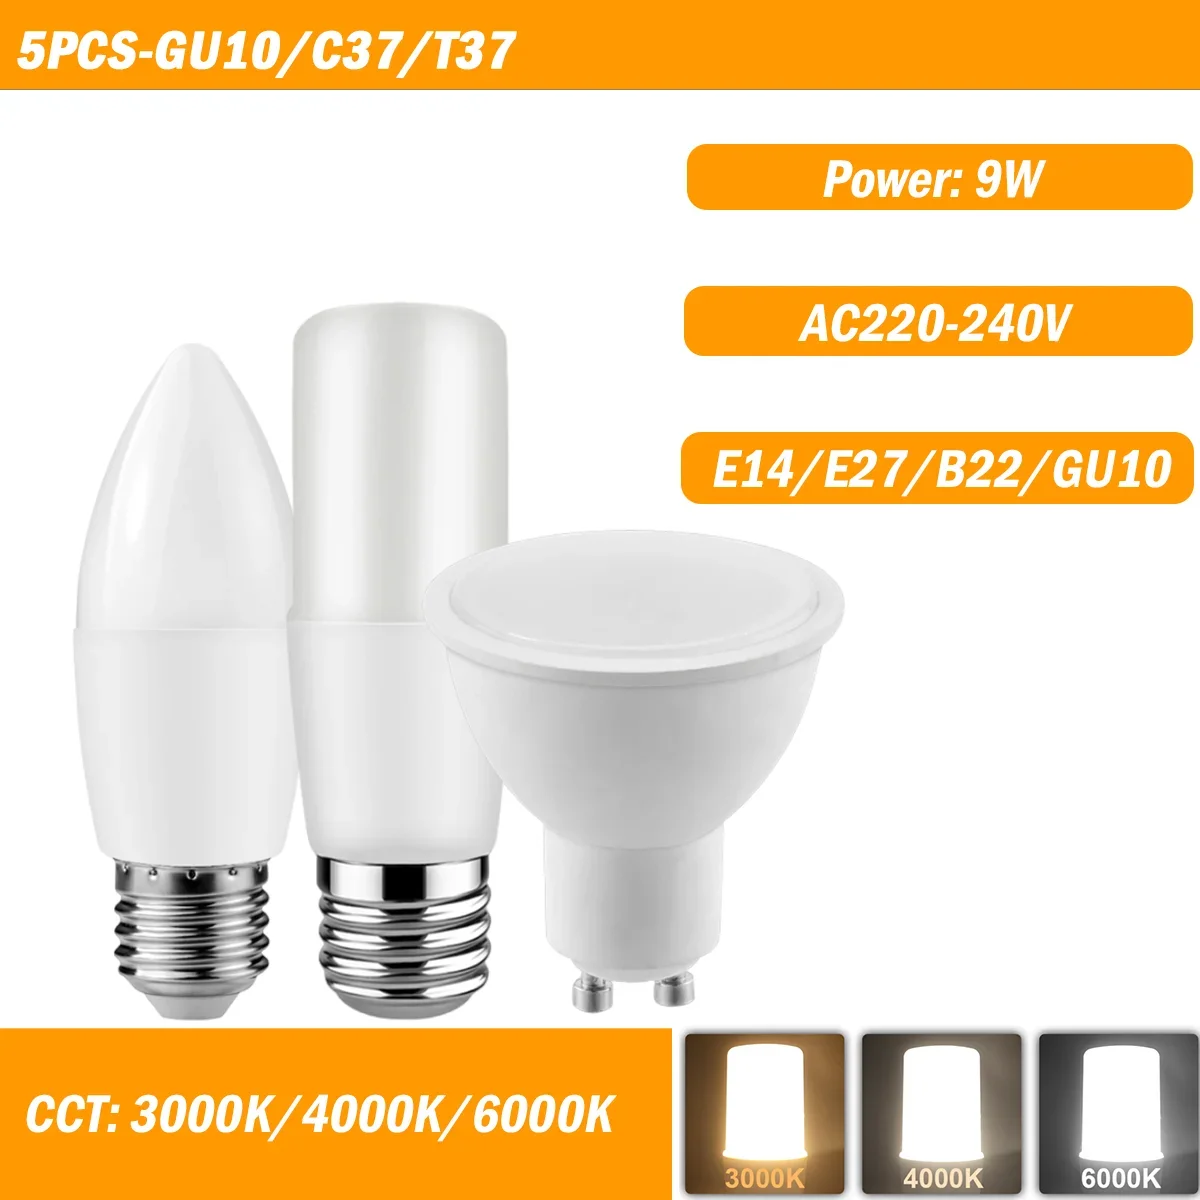 

C37/T37/GU10 5PCS 9W AC220-240V E14/E27/B22/GU10 High Lumen No Flicker 3000K/4000K/6000K Light for Home/Office Lighting